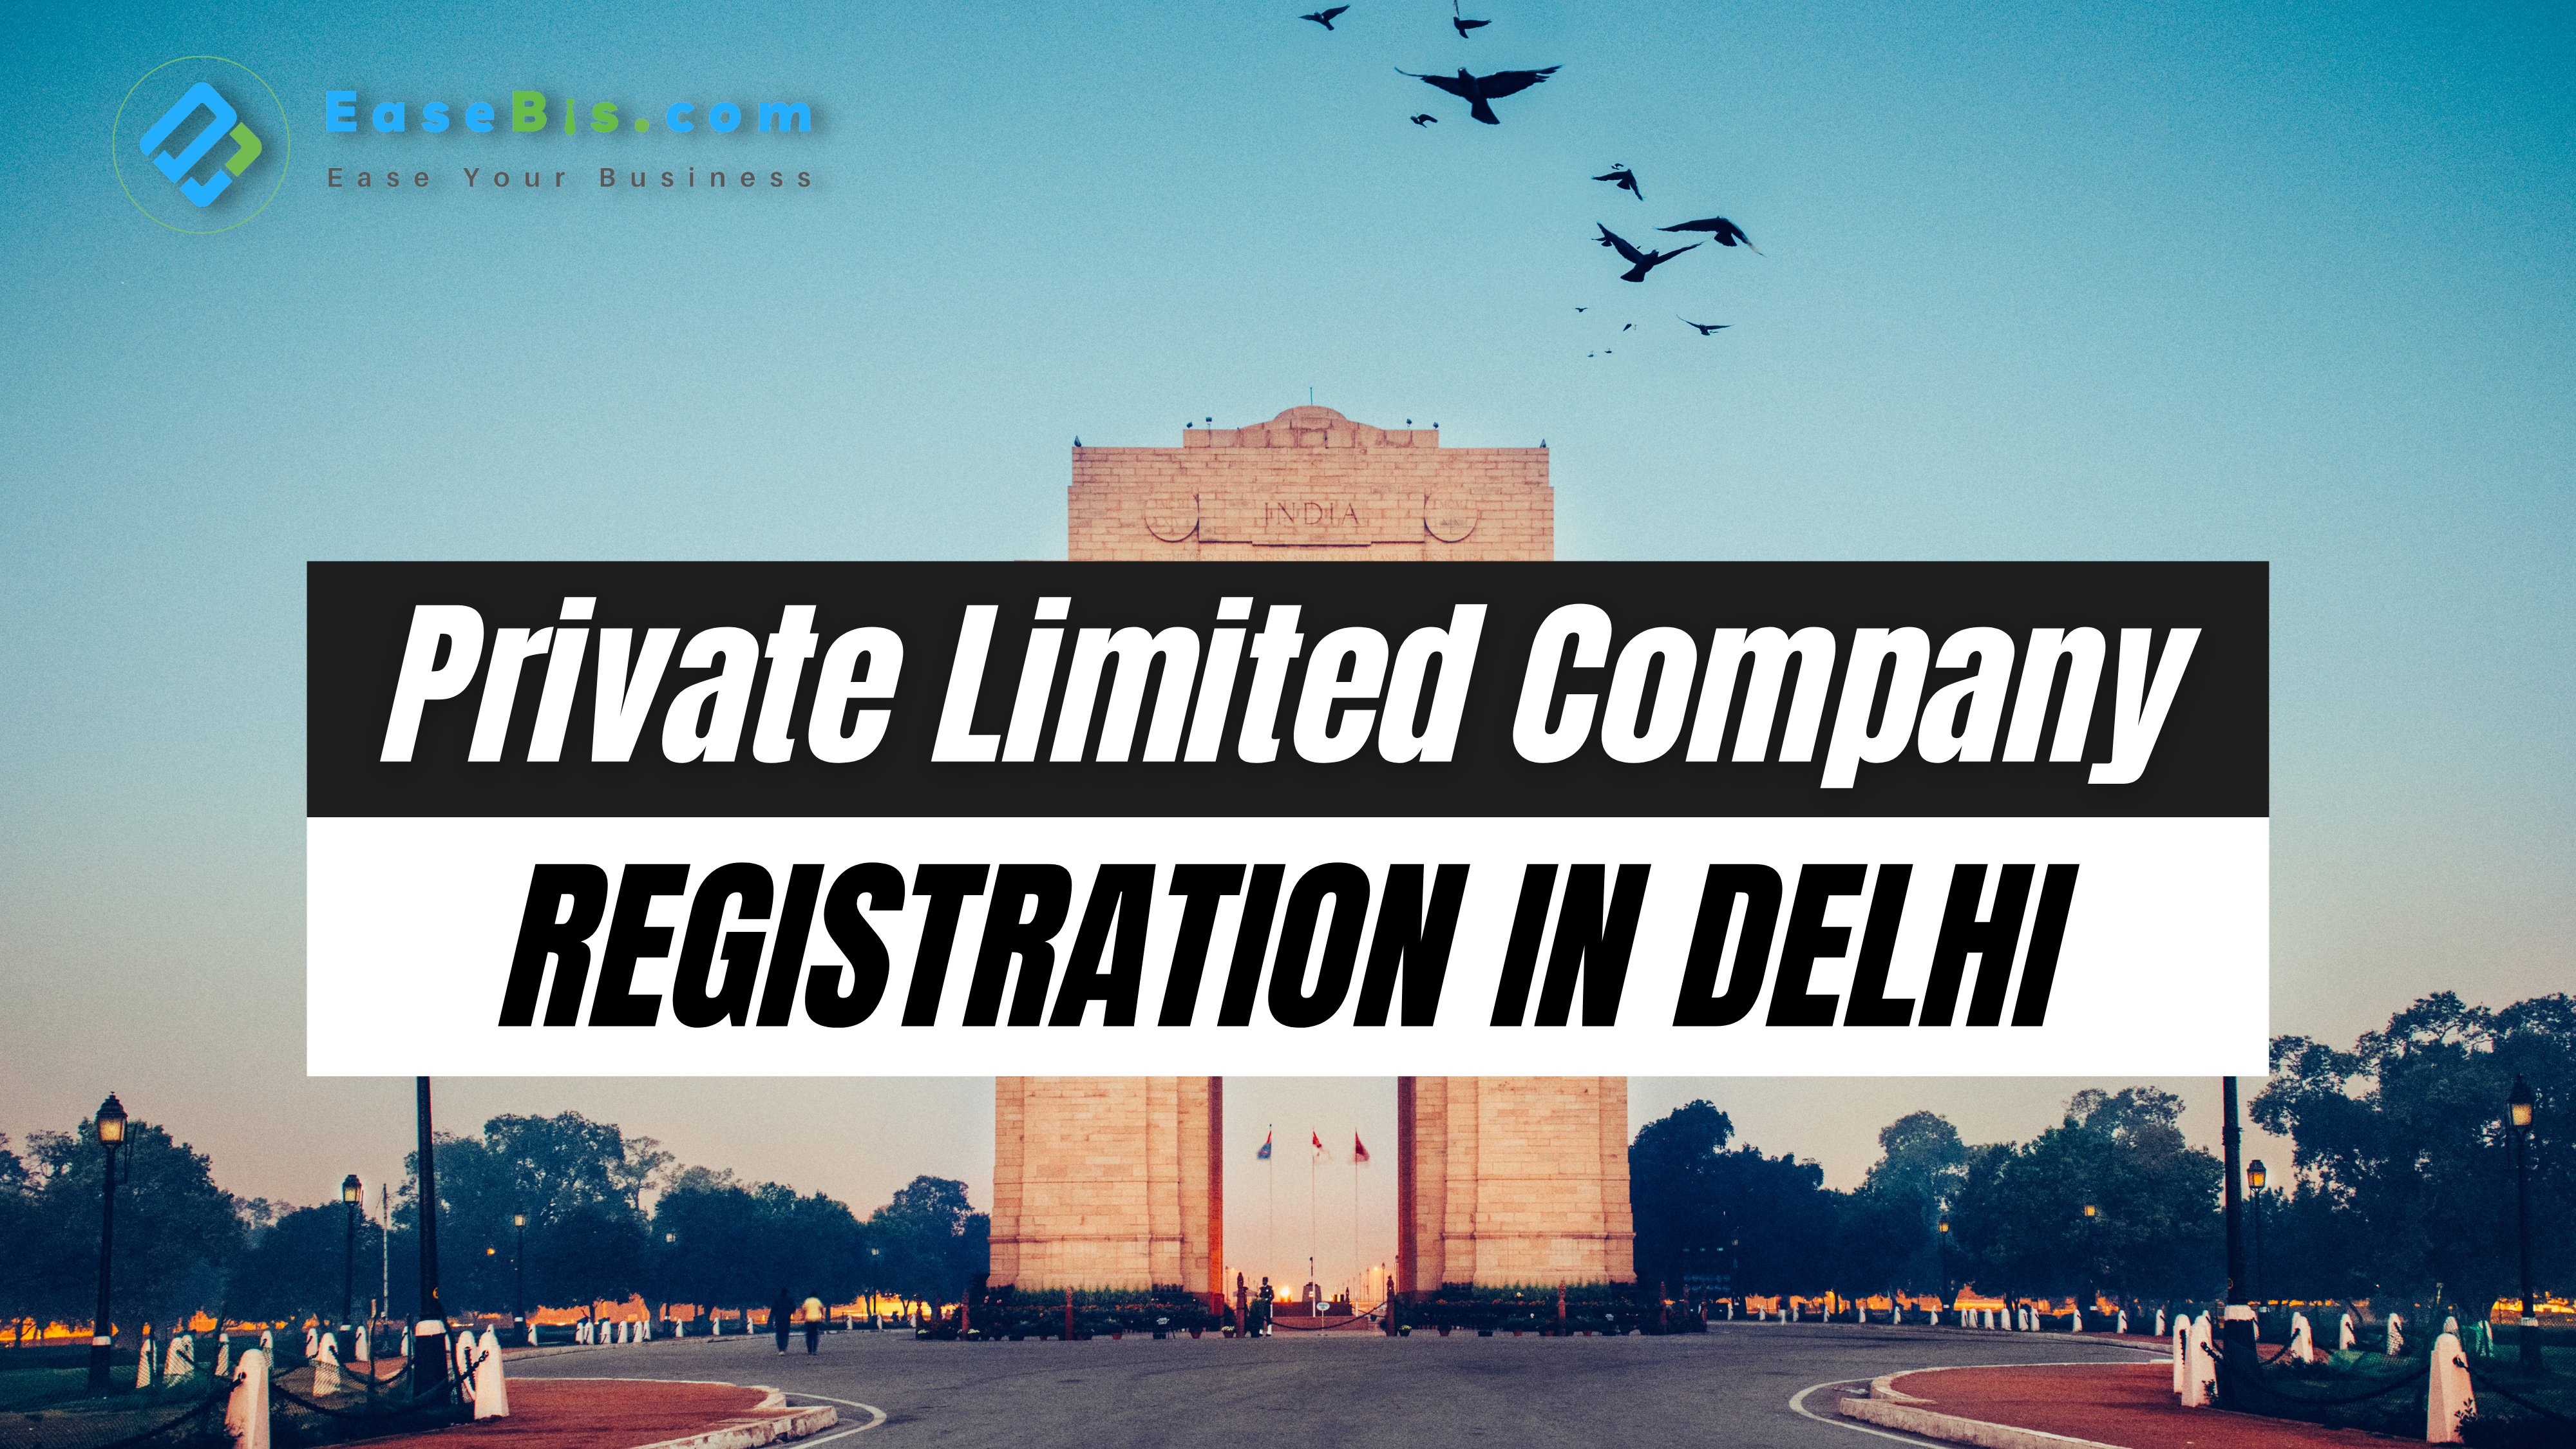 Private limited company registration in delhi